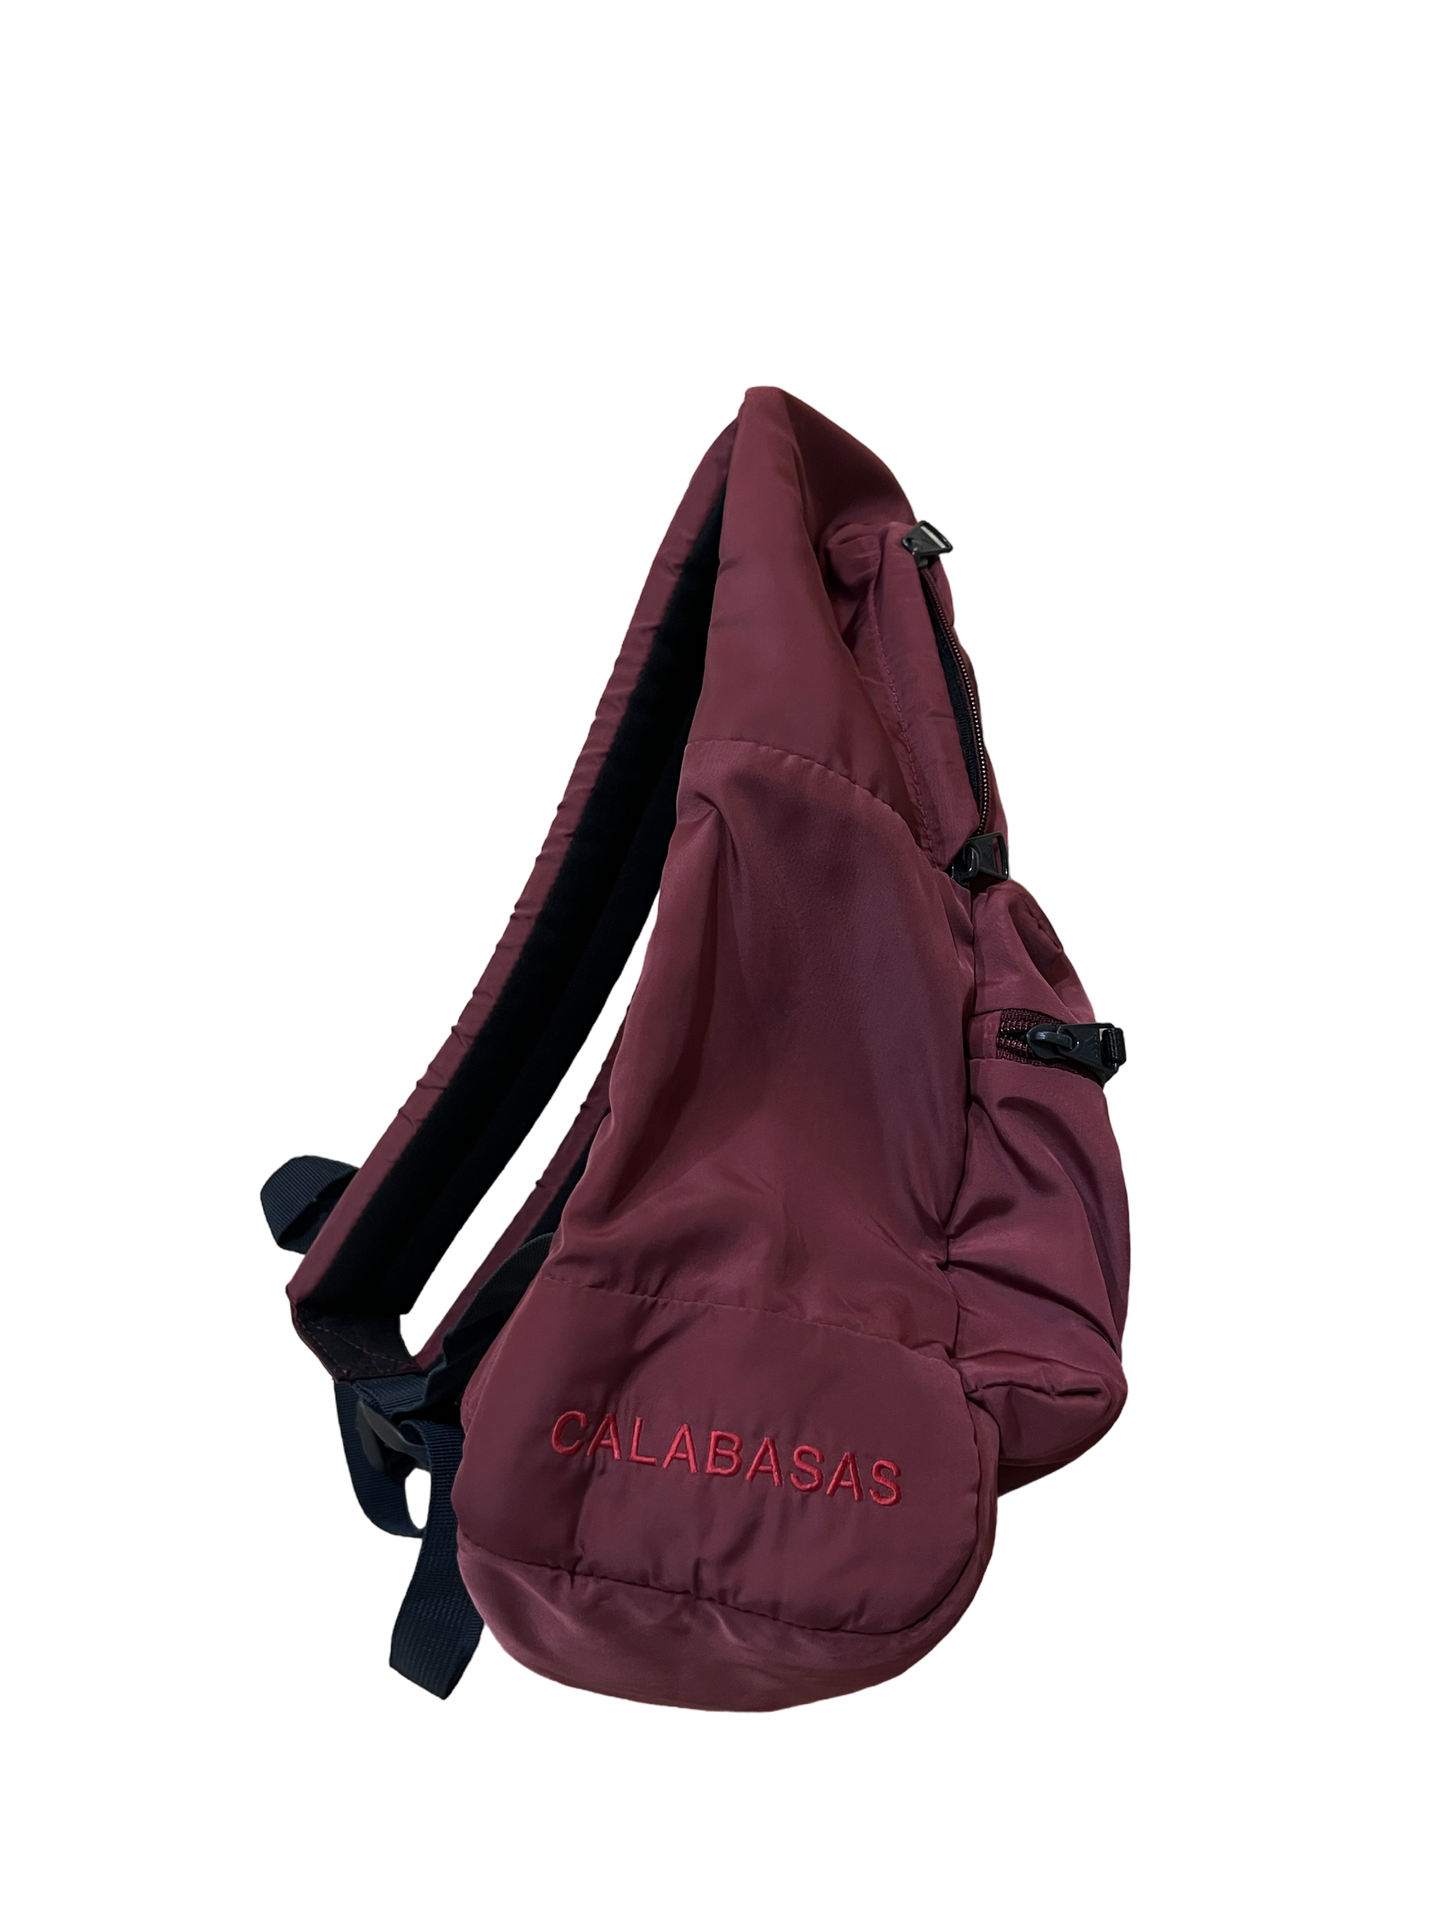 YZY Adidas Calabasas Sample Backpack